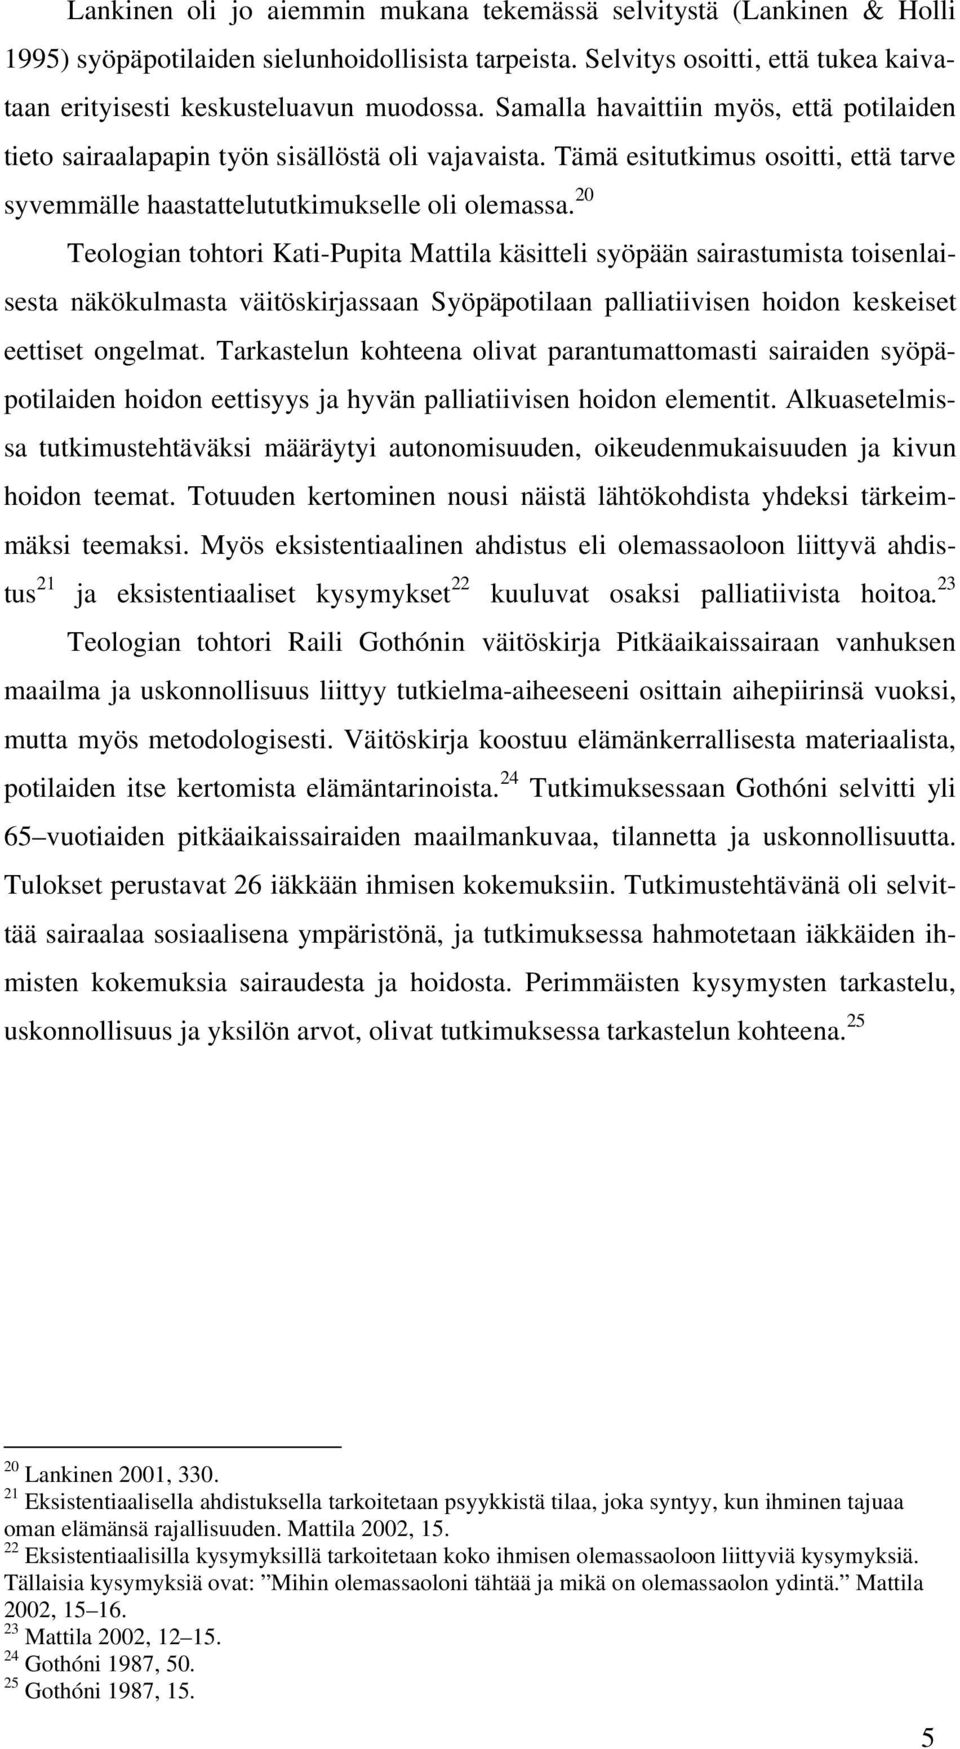 20 Teologian tohtori Kati-Pupita Mattila käsitteli syöpään sairastumista toisenlaisesta näkökulmasta väitöskirjassaan Syöpäpotilaan palliatiivisen hoidon keskeiset eettiset ongelmat.